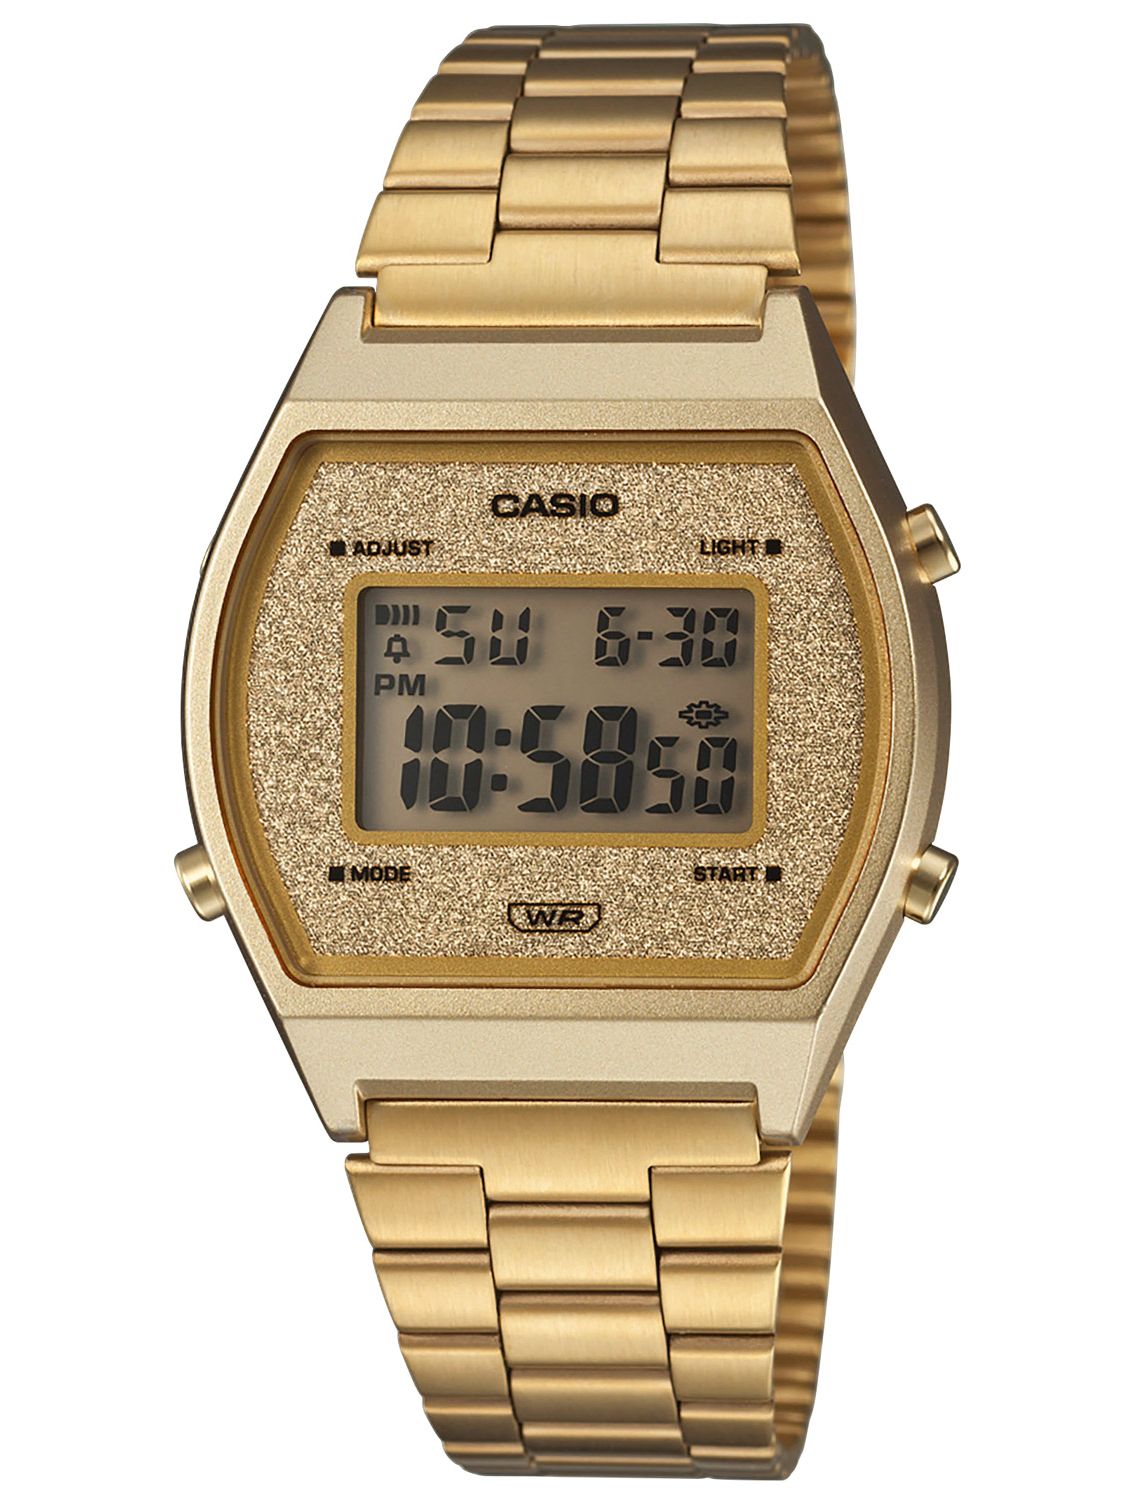 casio gold tone digital watch